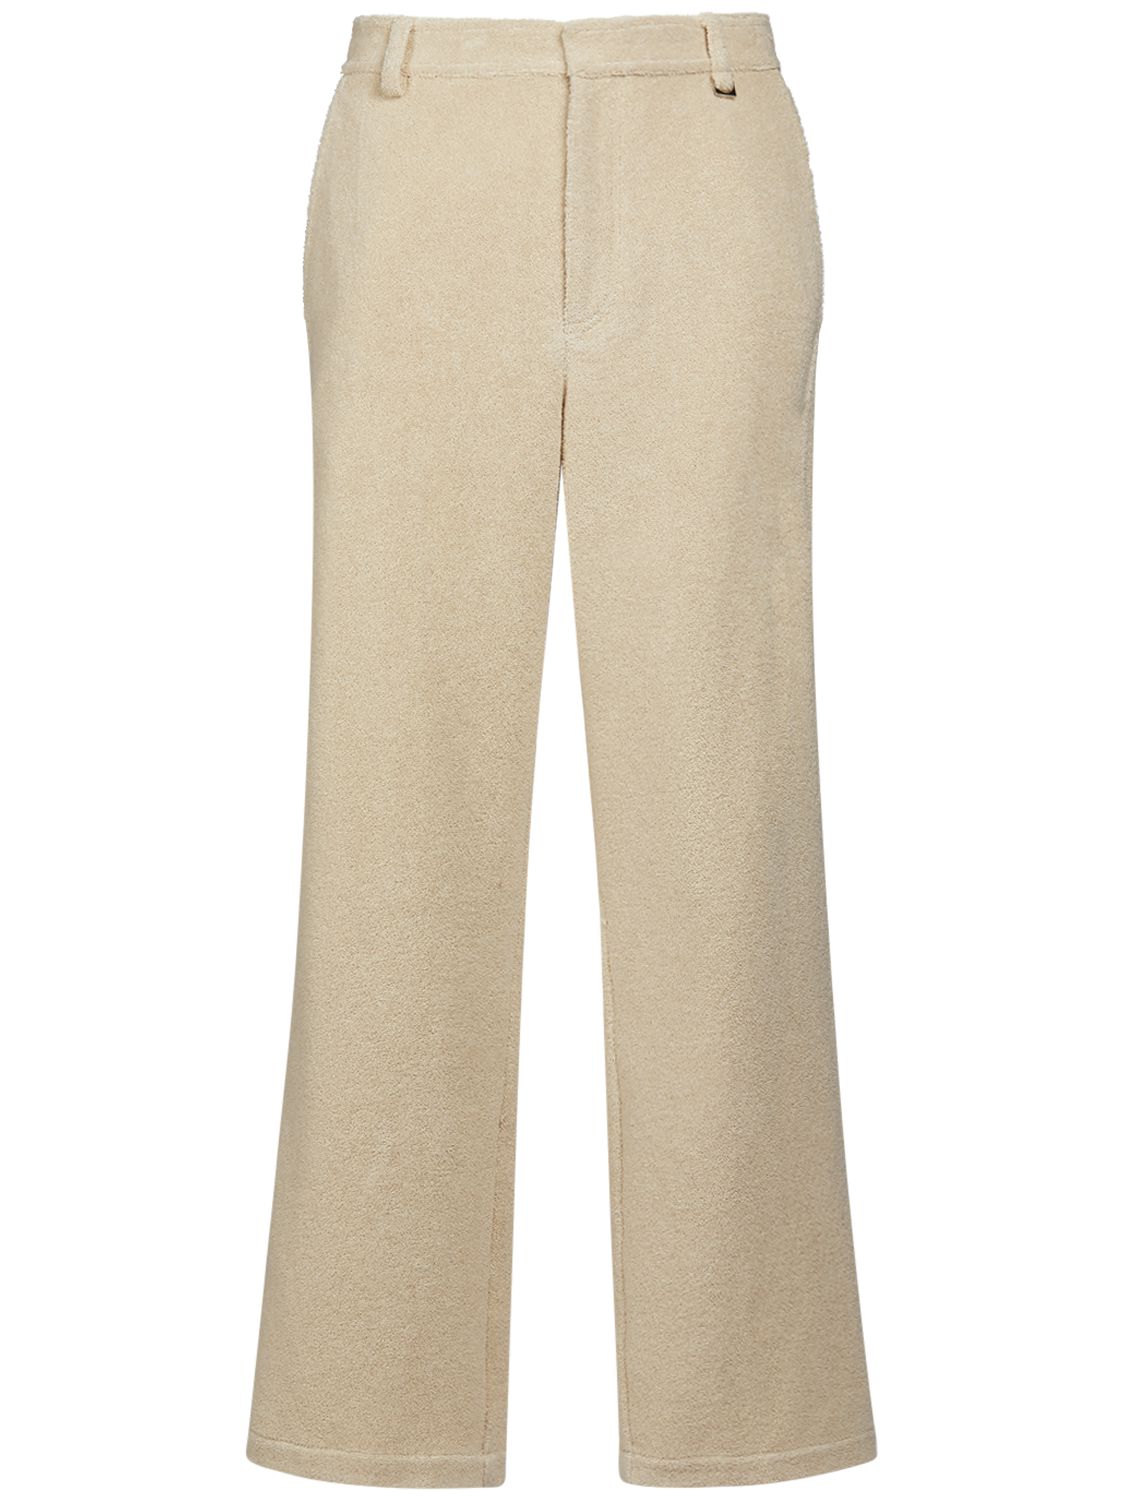 Le Banho Cotton Pants